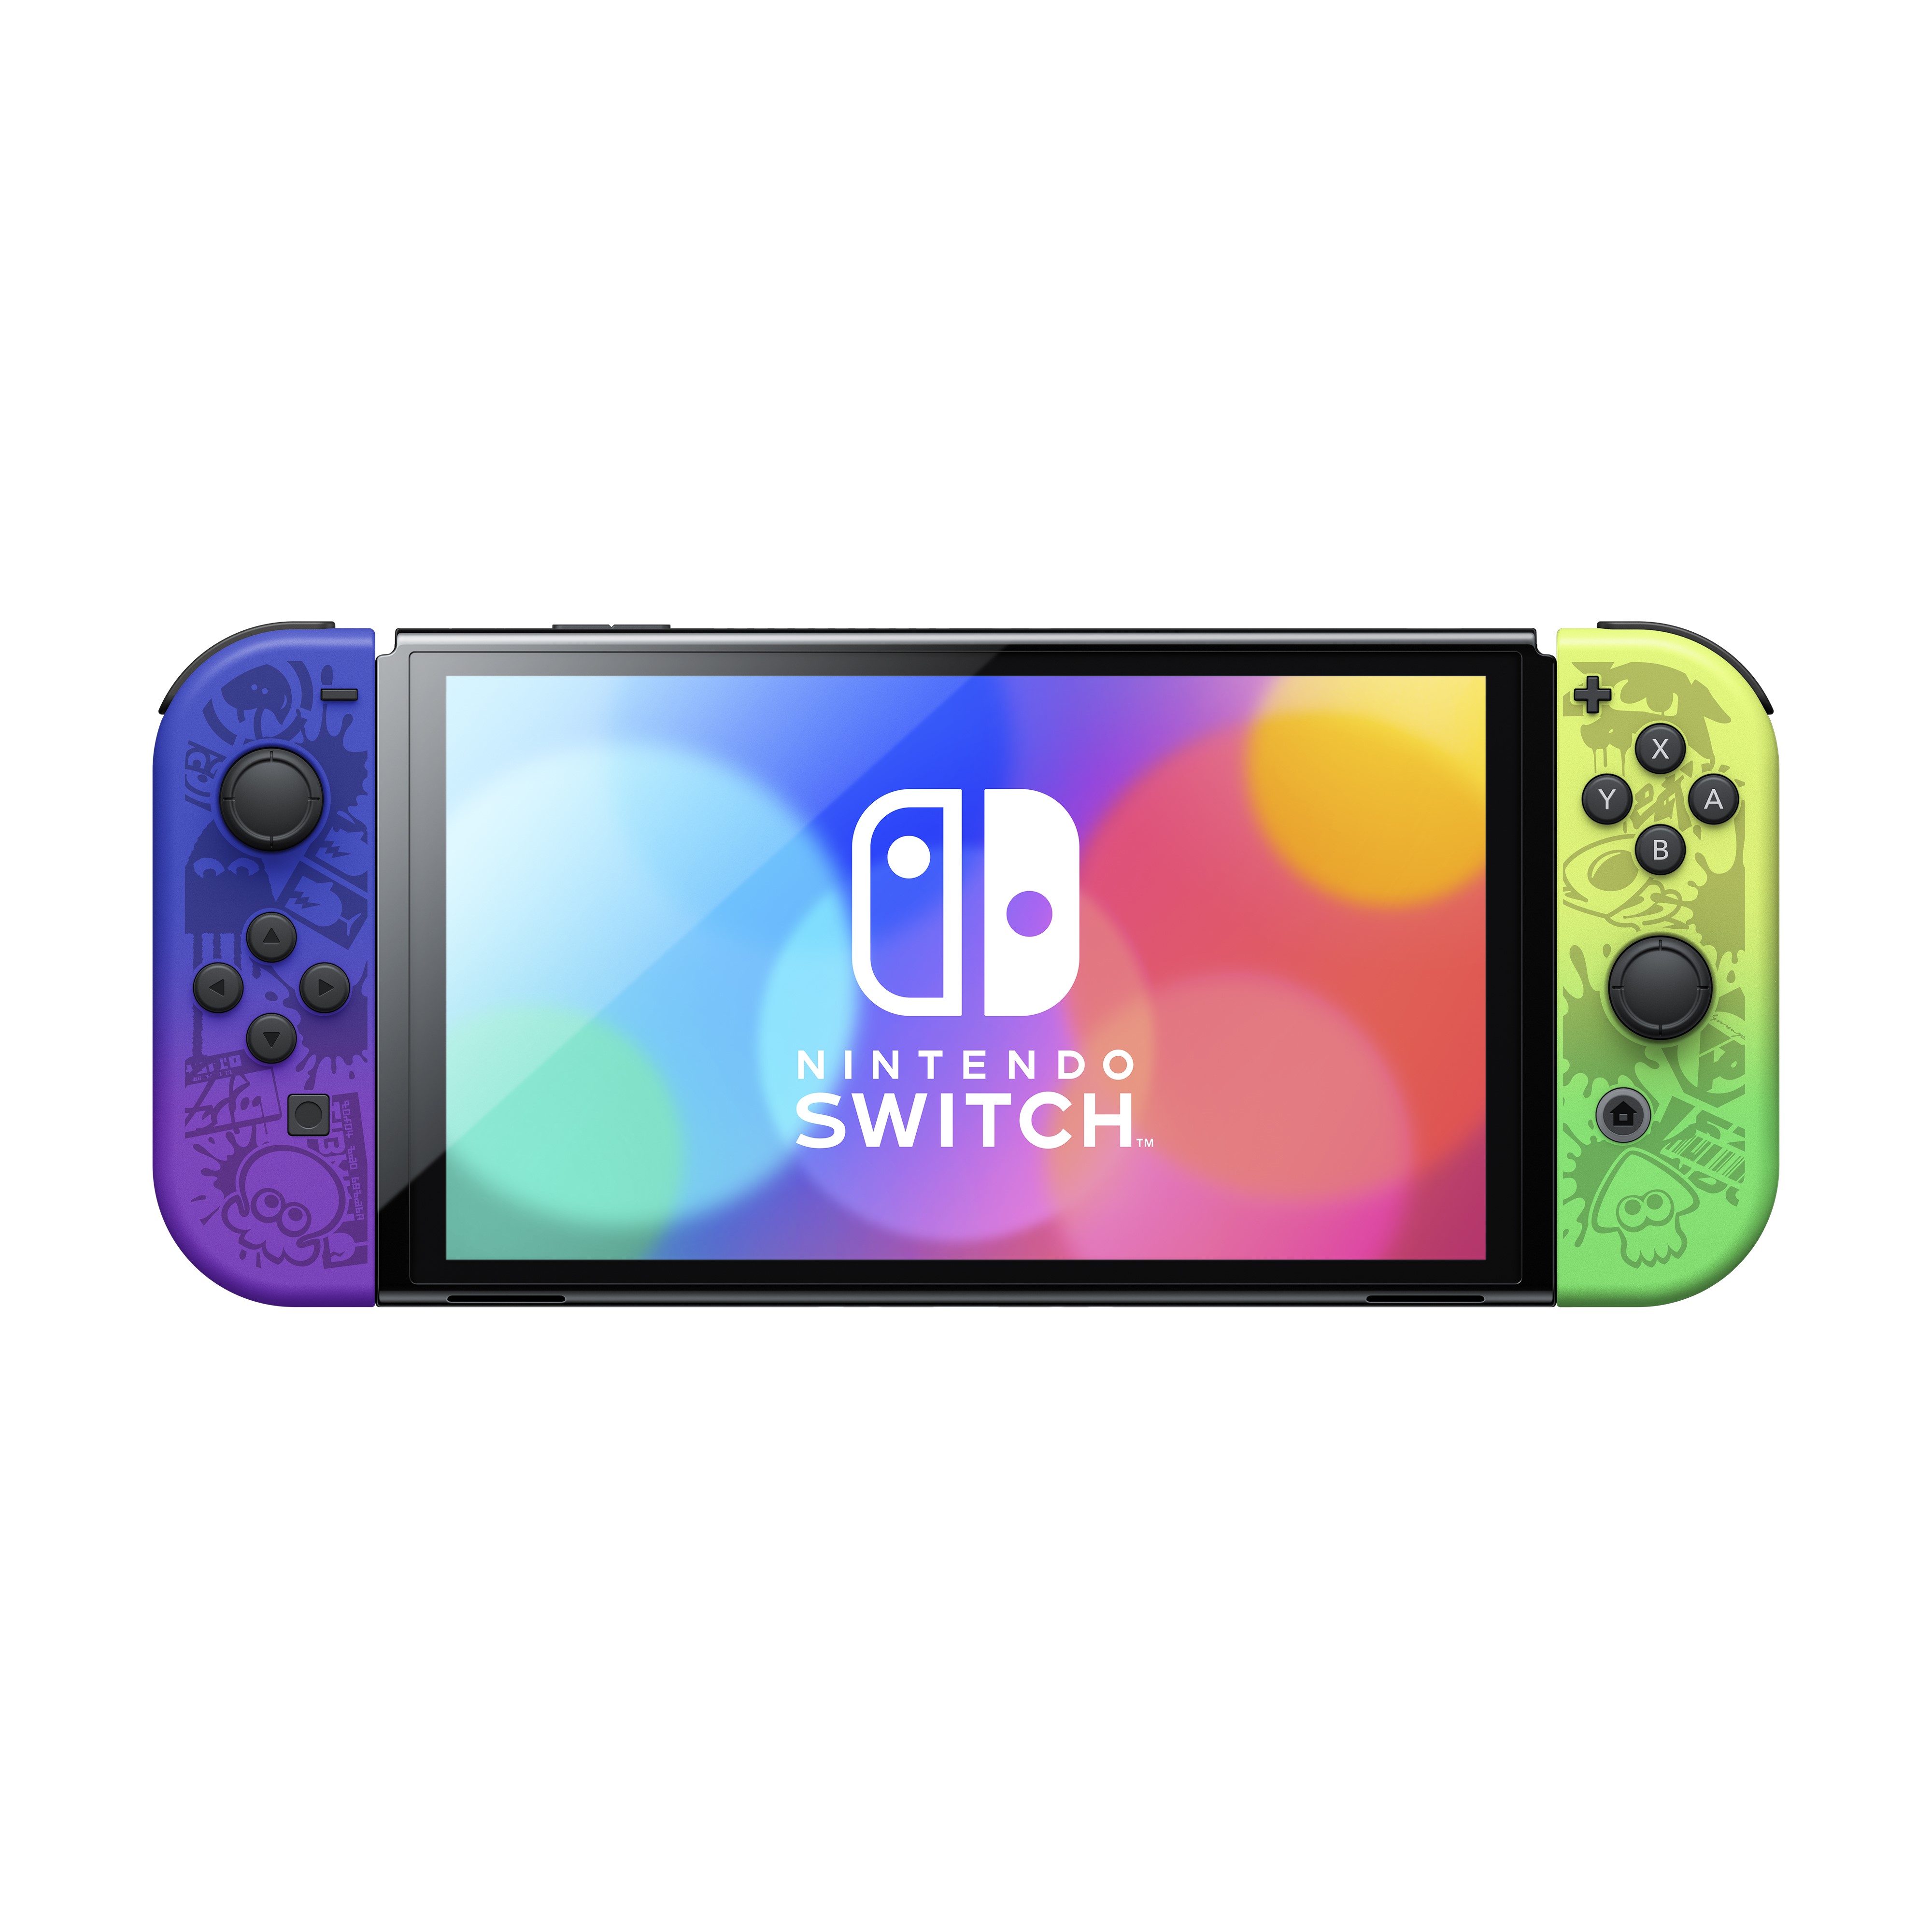 Nintendo prévoit de vendre le dock de la Nintendo Switch OLED aussi  séparément